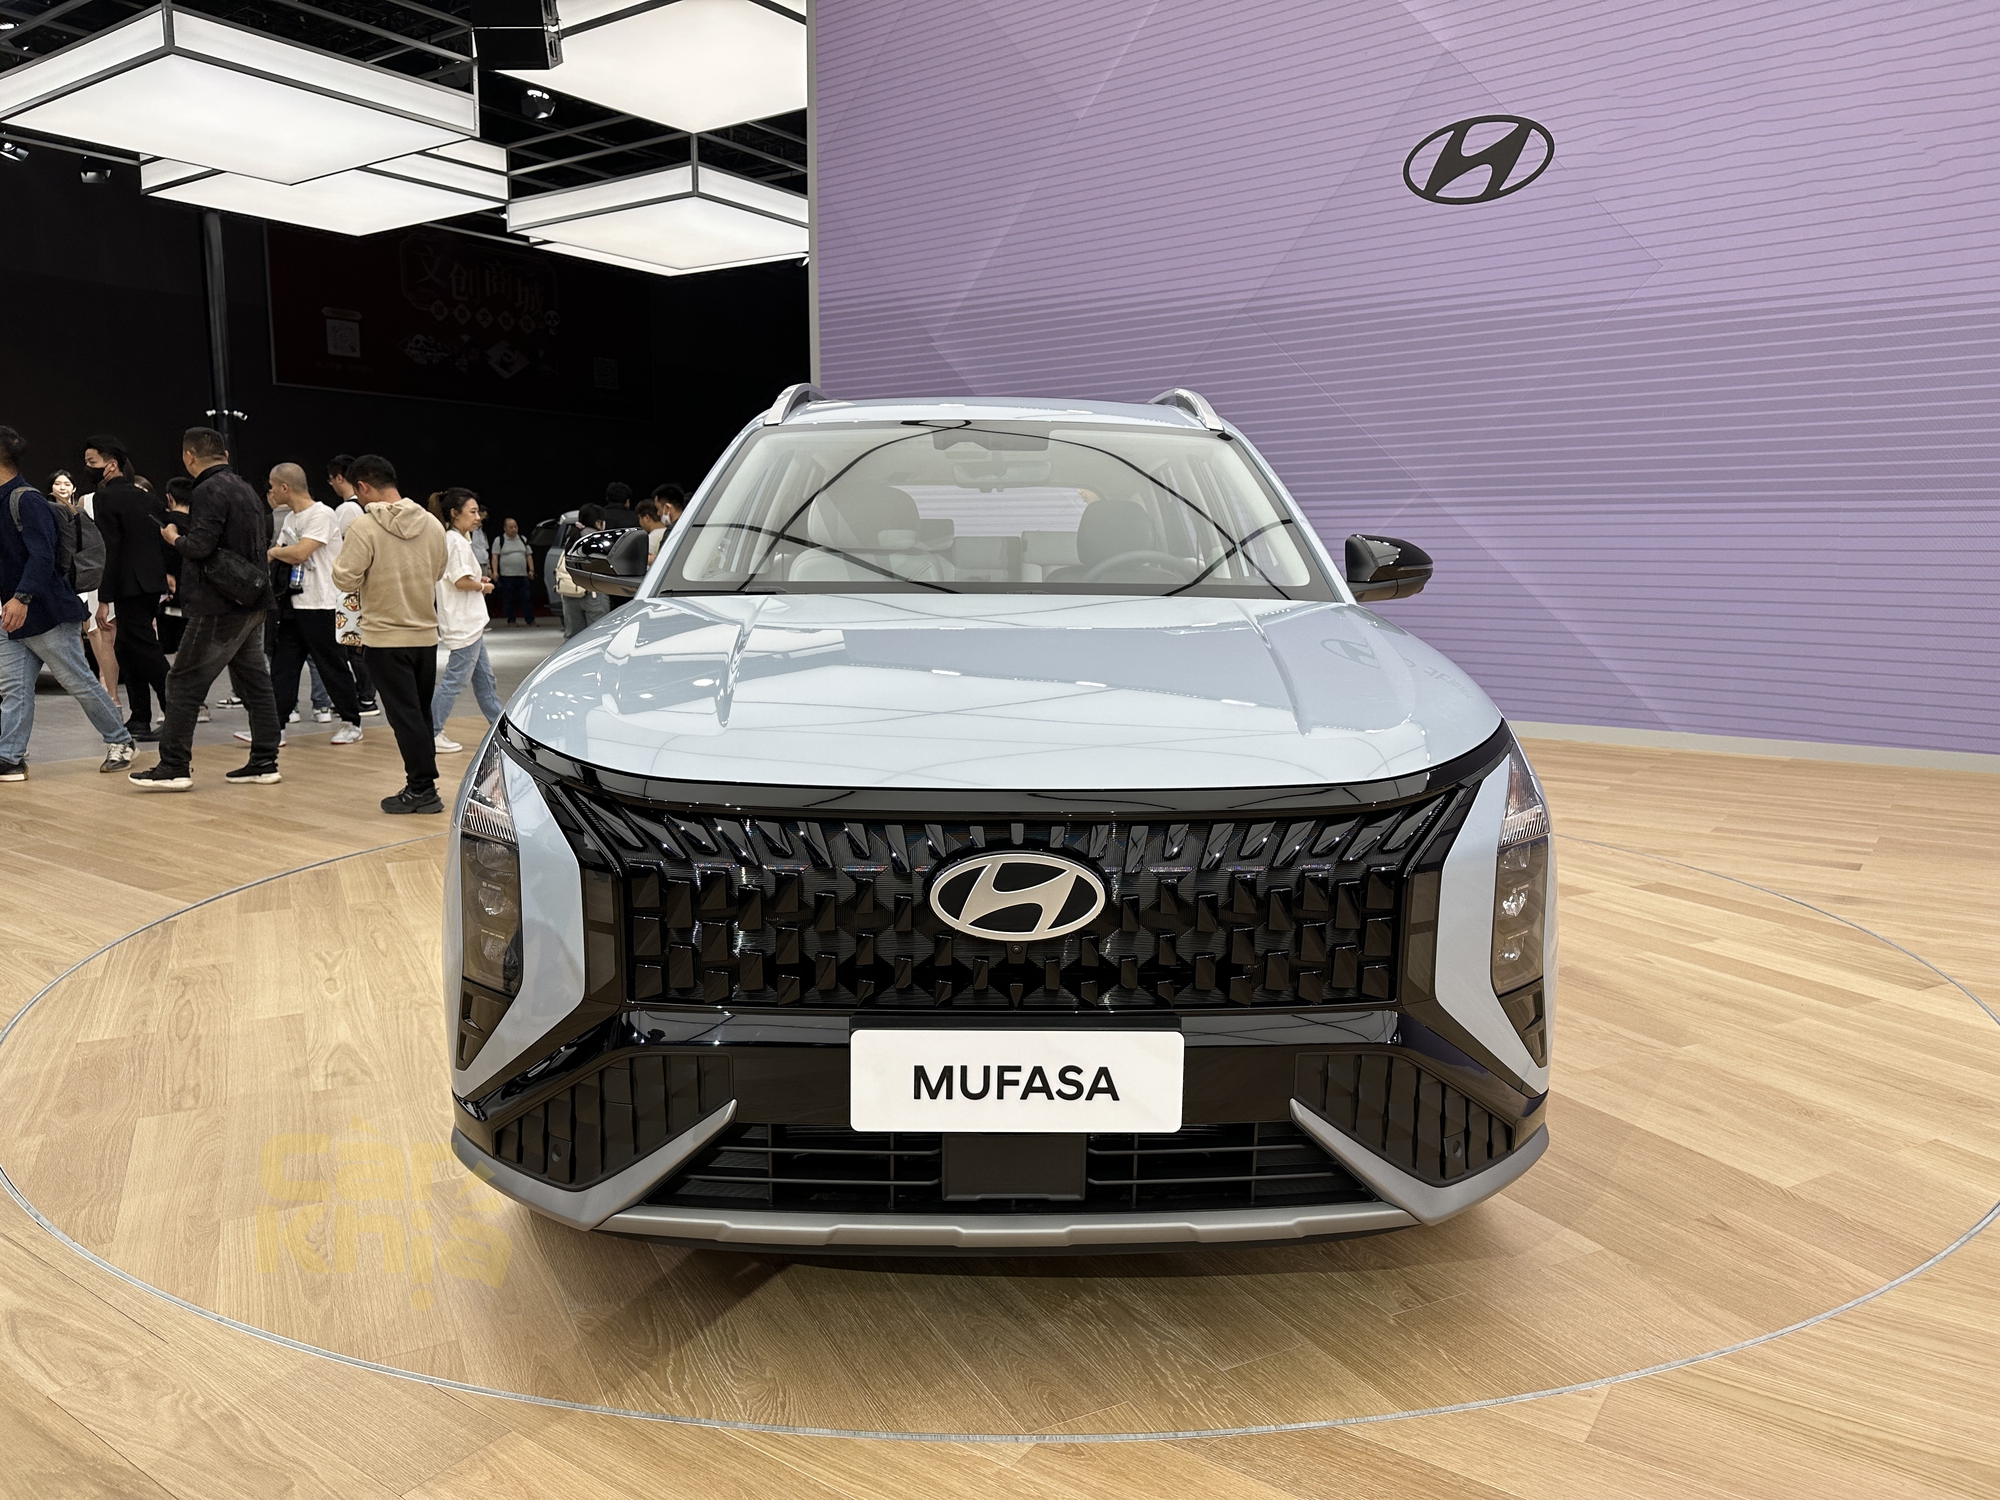 Hyundai Mufasa chính thức ra mắt: Nội thất khác xa ảnh rò rỉ, học hỏi nhiều từ Tucson và Elantra - Ảnh 4.